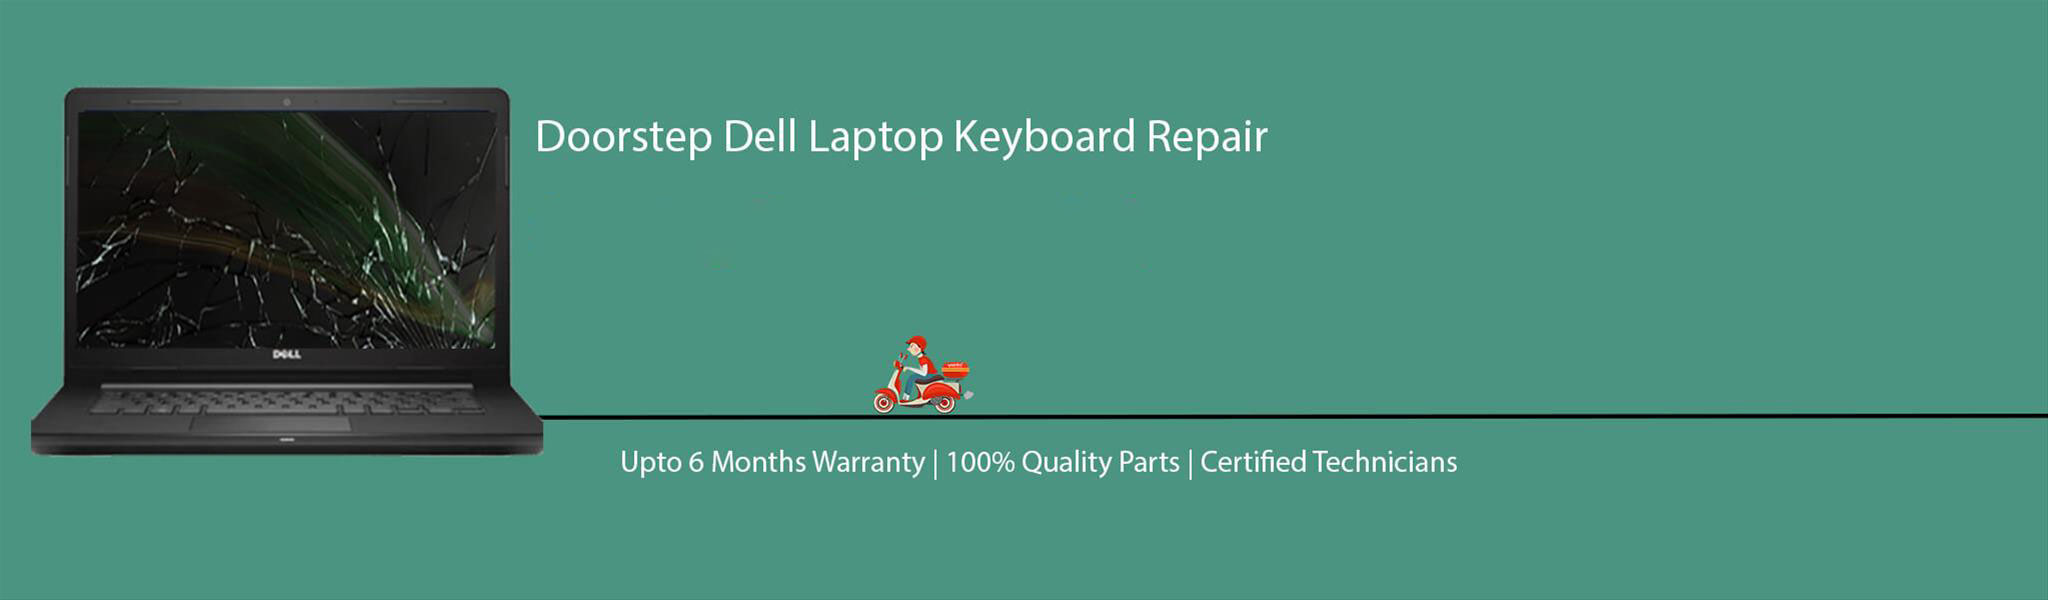 dell-laptop-keyboard-repair.jpg